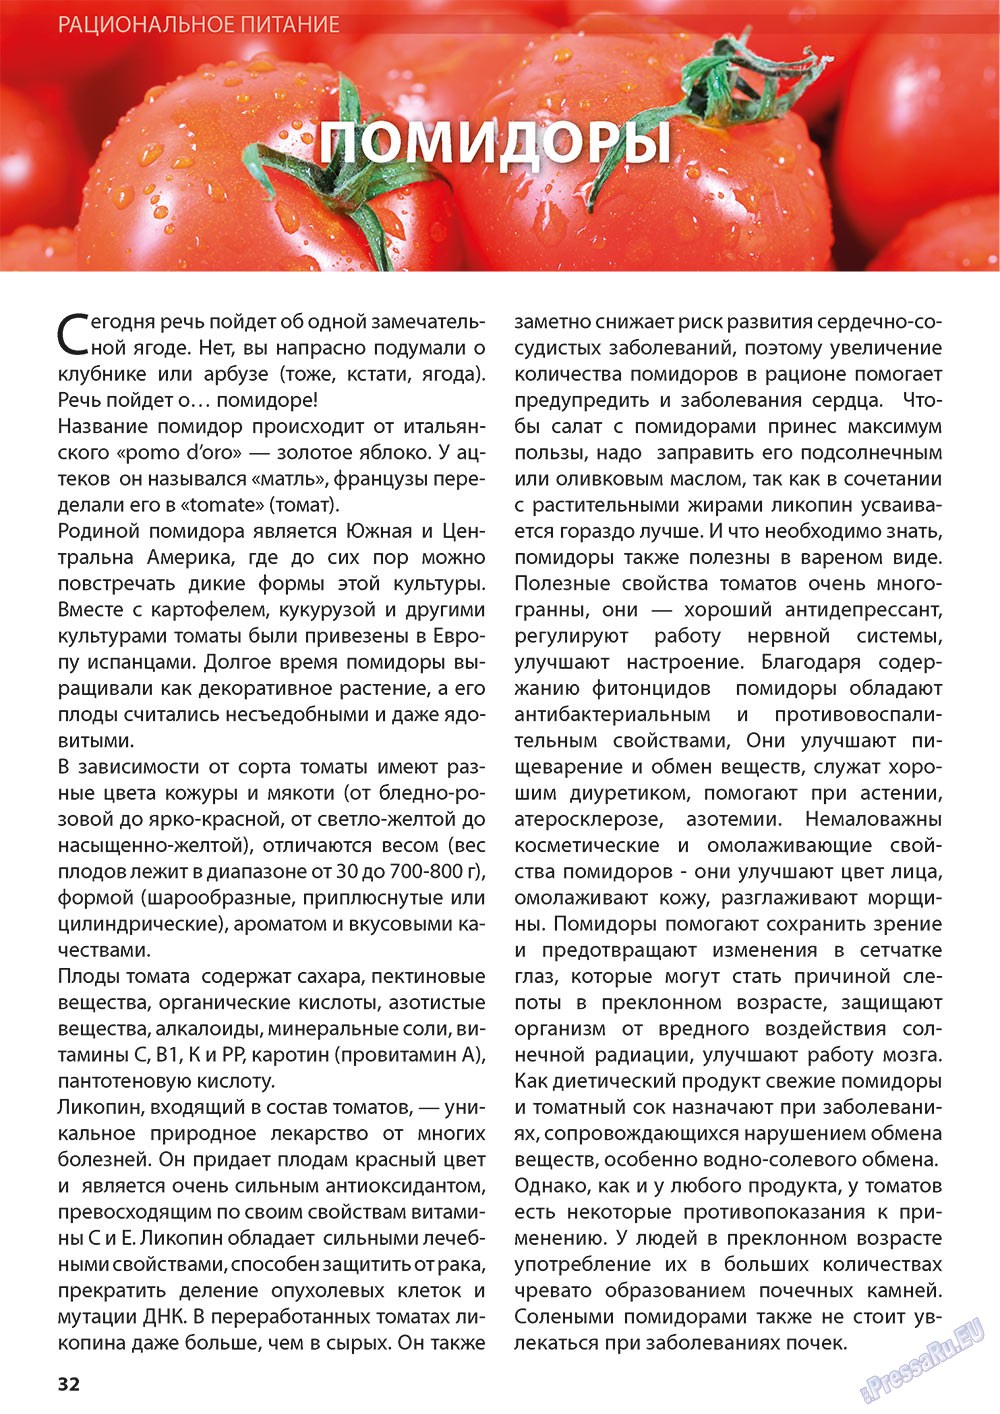 Помидоры кормящей маме. Полезные свойства томатов. Питание томата. Что полезного в помидорах свежих. Можно ли есть помидоры.